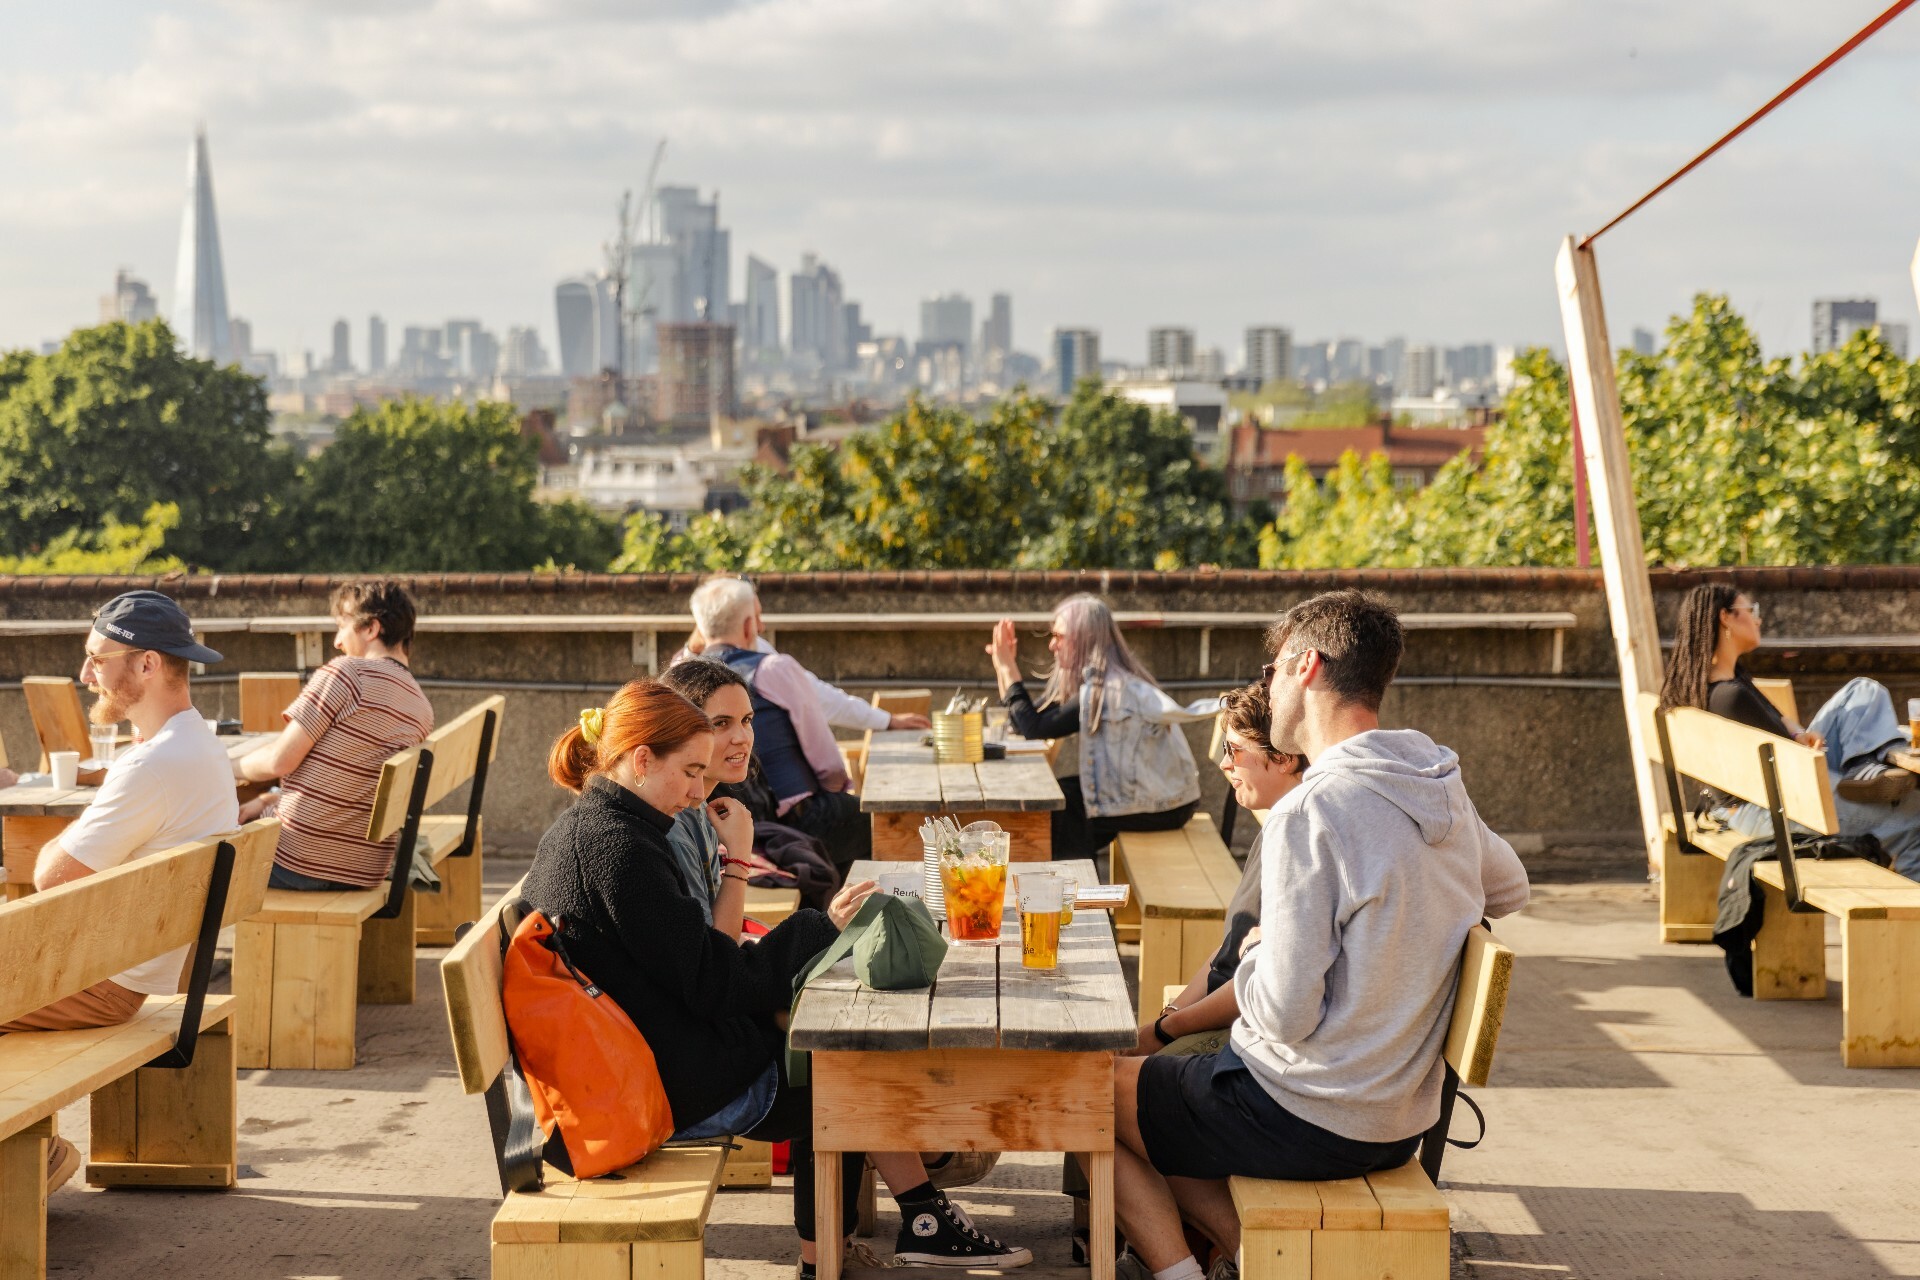 Les meilleurs bars sur les toits d’Europe se trouvent à Londres et au-dessus du parking de Peckham